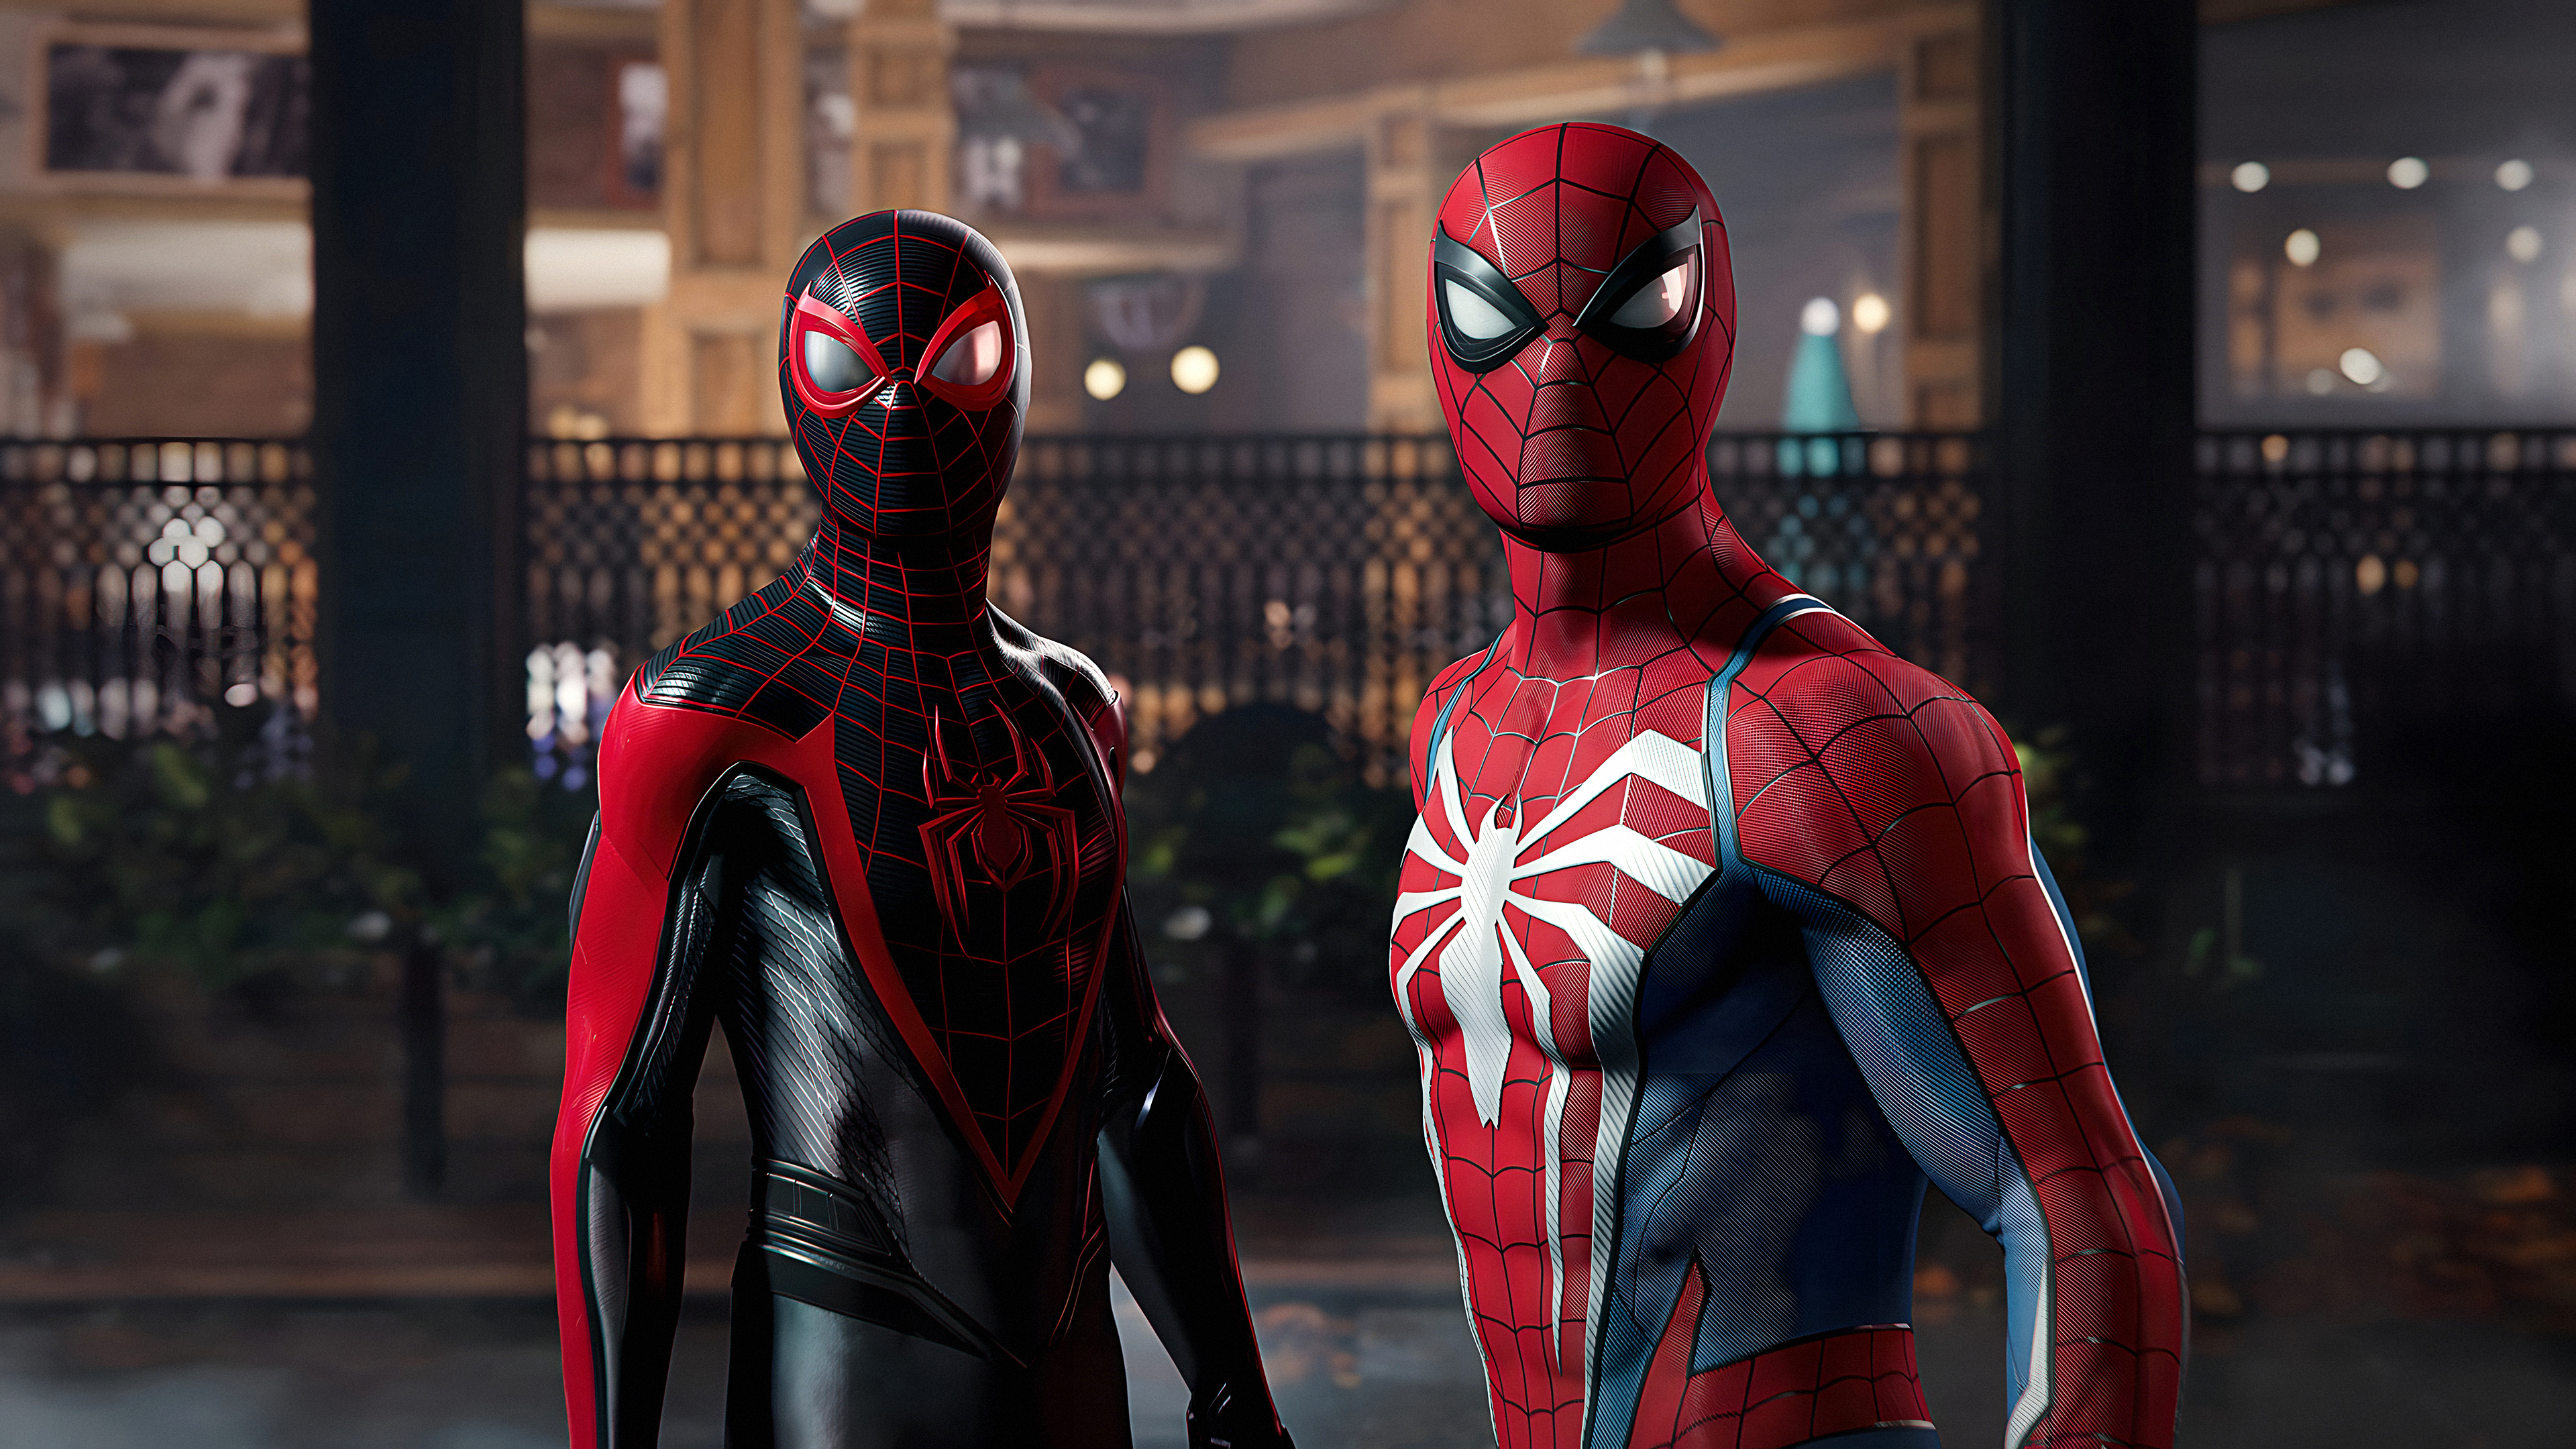 Sony PlayStation Playstation 5 4K Spider Man Peter Parker Miles Morales Marvel S Spider Man 2 Insomn 3840x2160